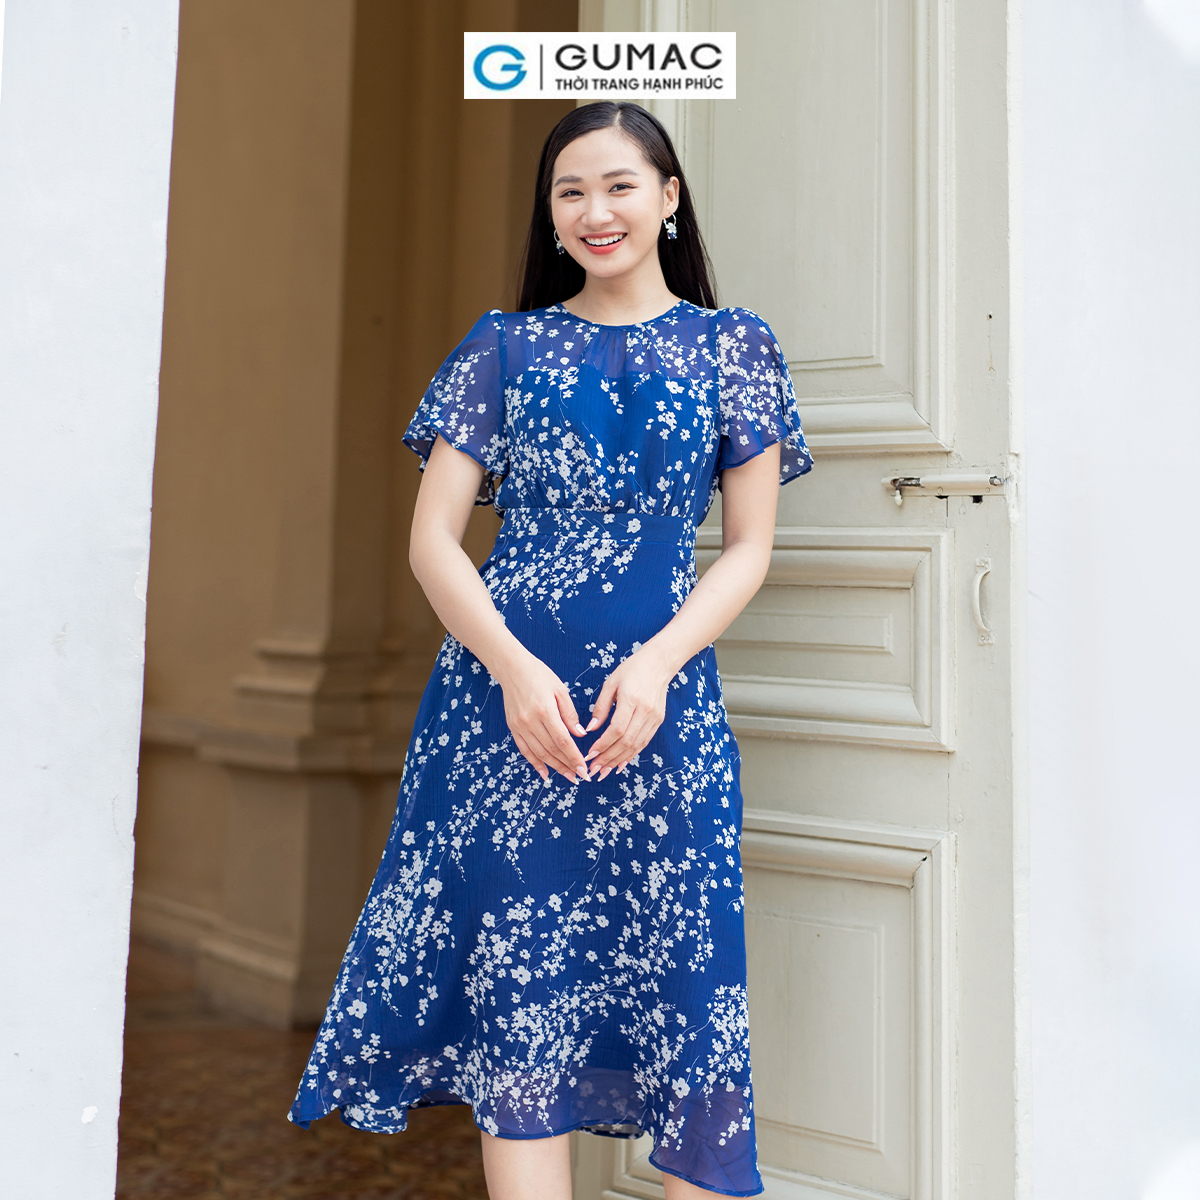 Đầm A xòe họa tiết hoa nữ tính thanh lịch thời trang GUMAC LDD0701